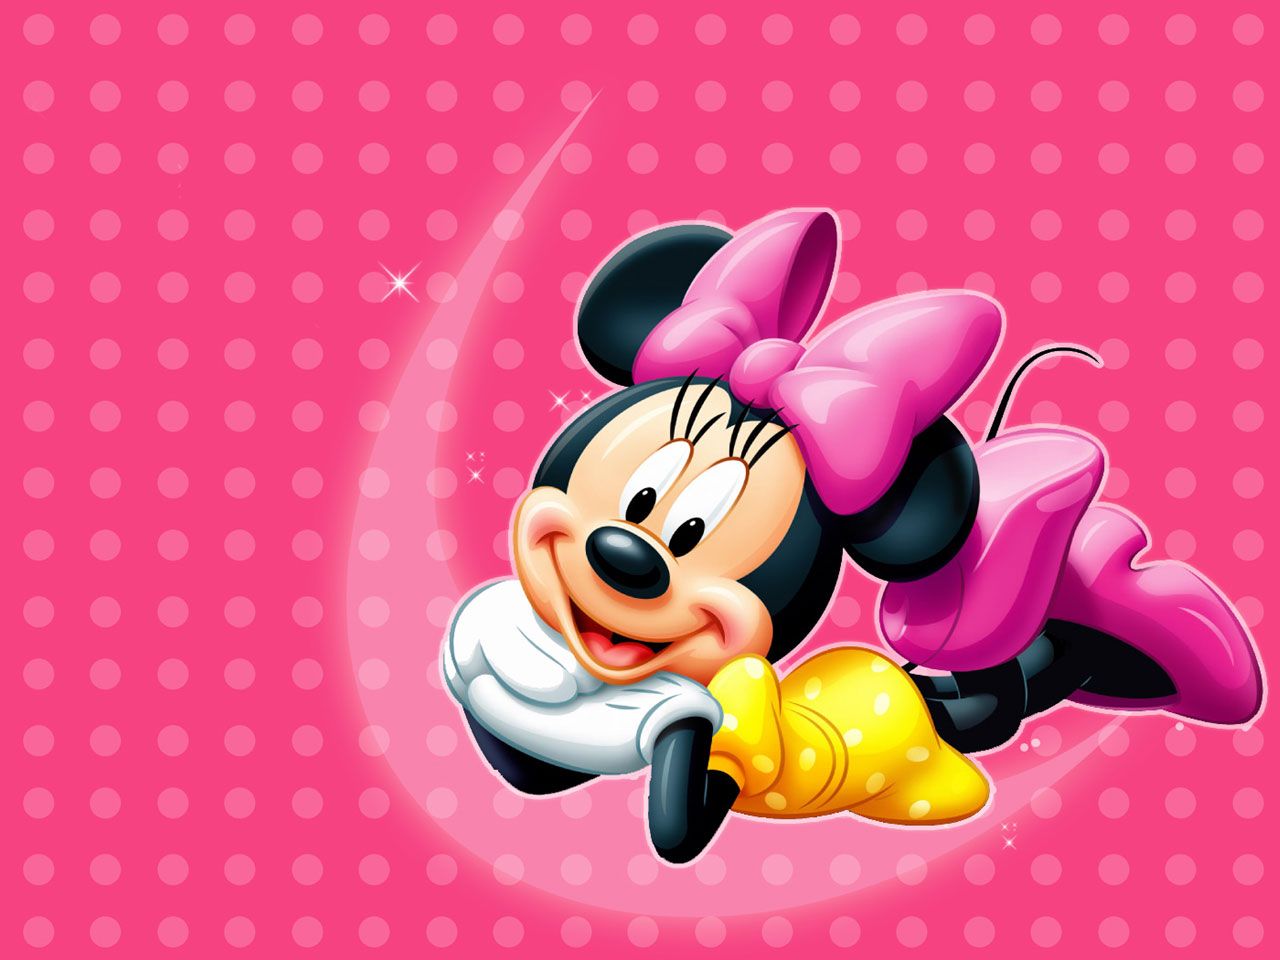 Fondos de Mickey Mouse # ST6R1P8 | WallpapersExpert.com